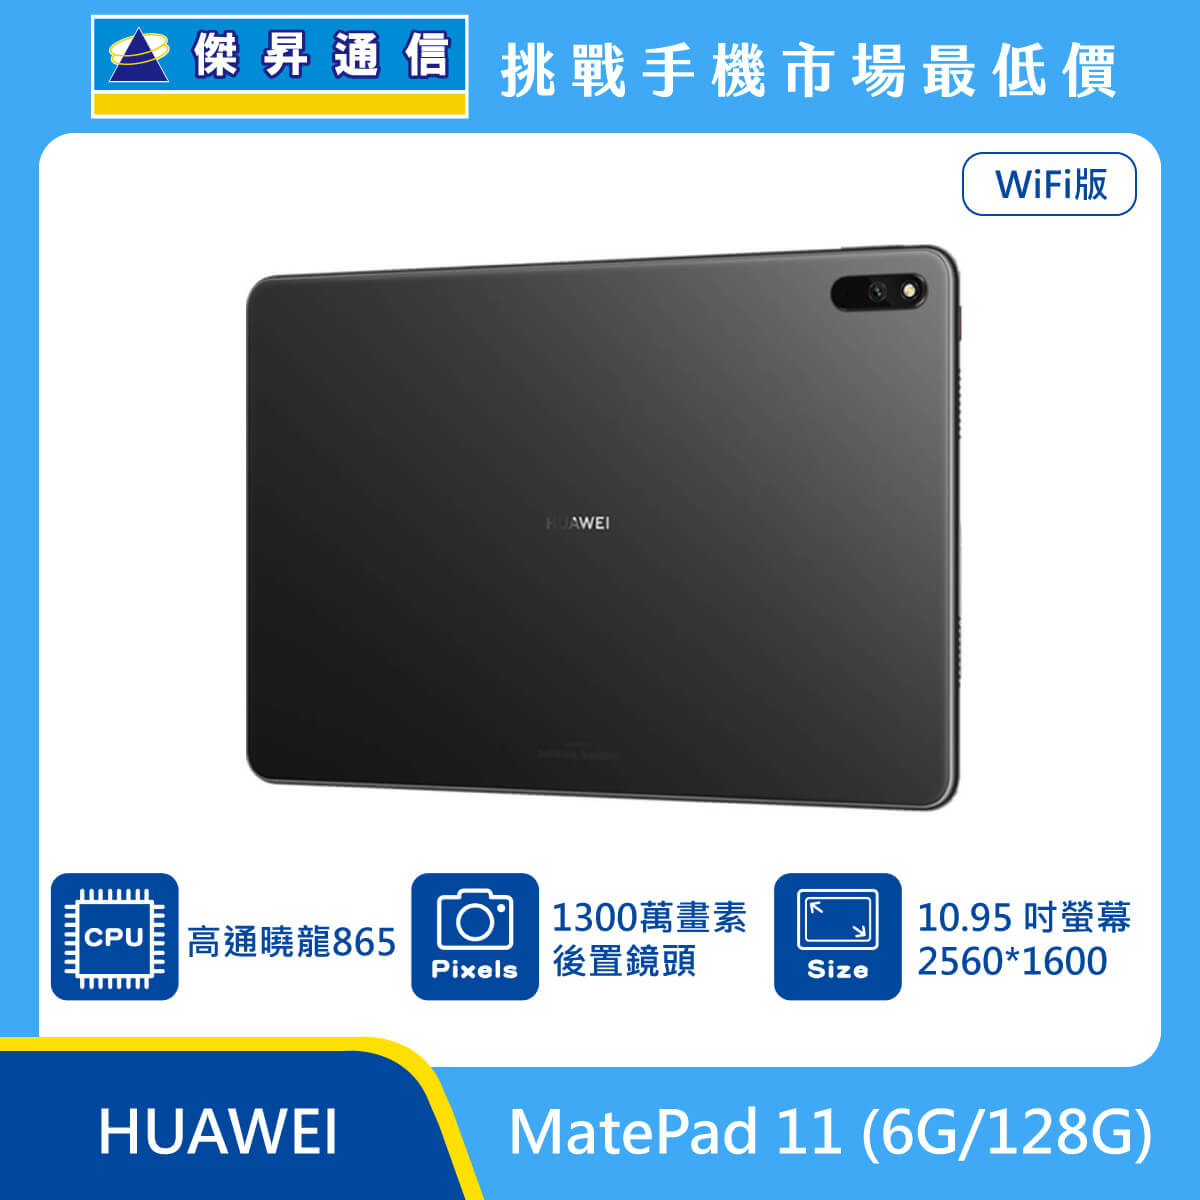 HUAWEI 平板 MatePad 11 (6G/128G)